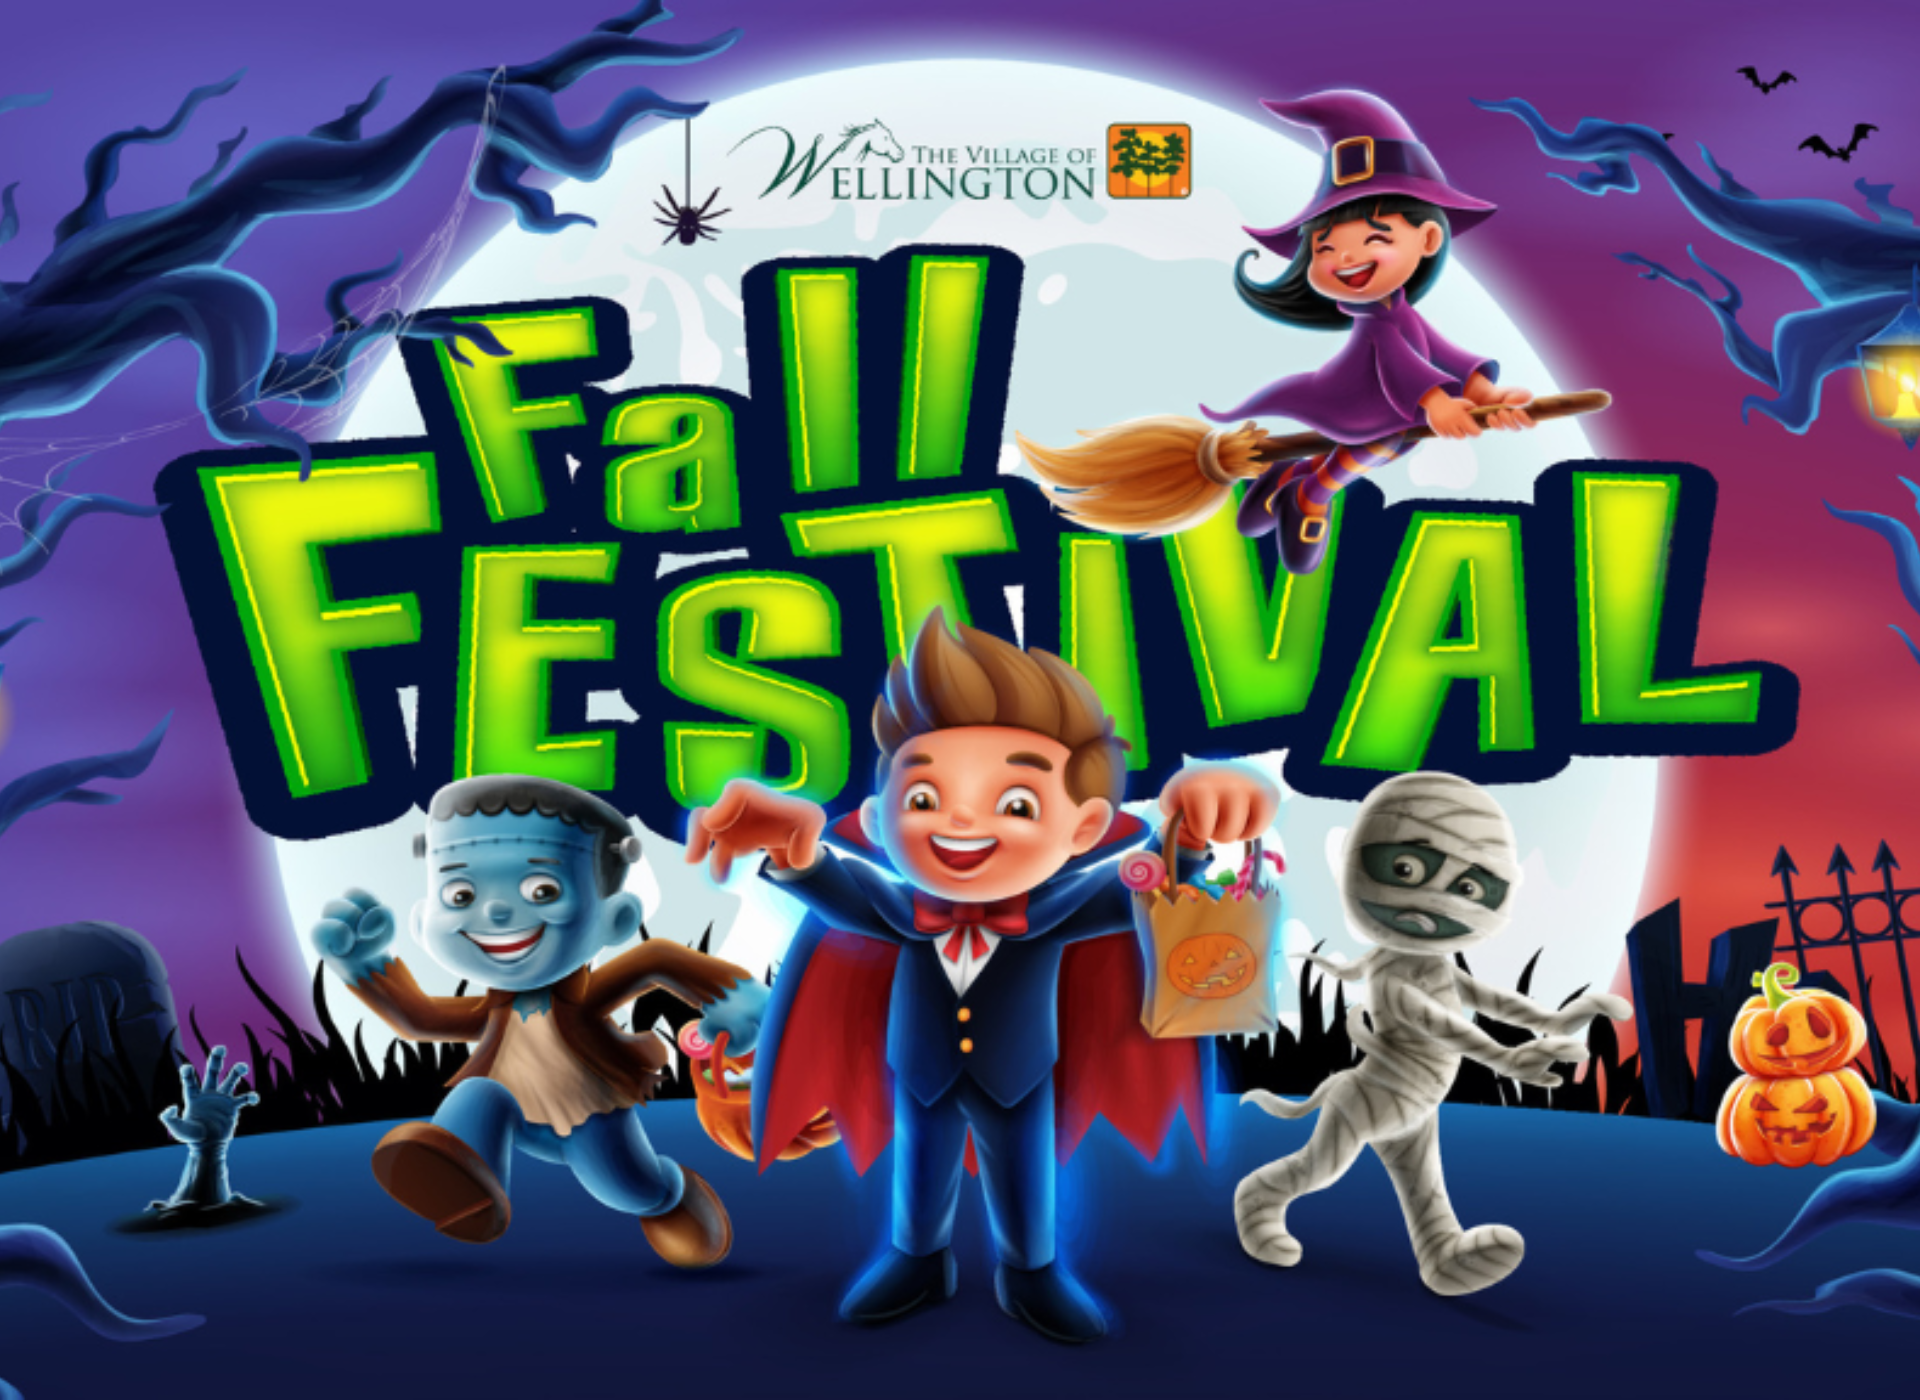 Wellington - Fall Festival